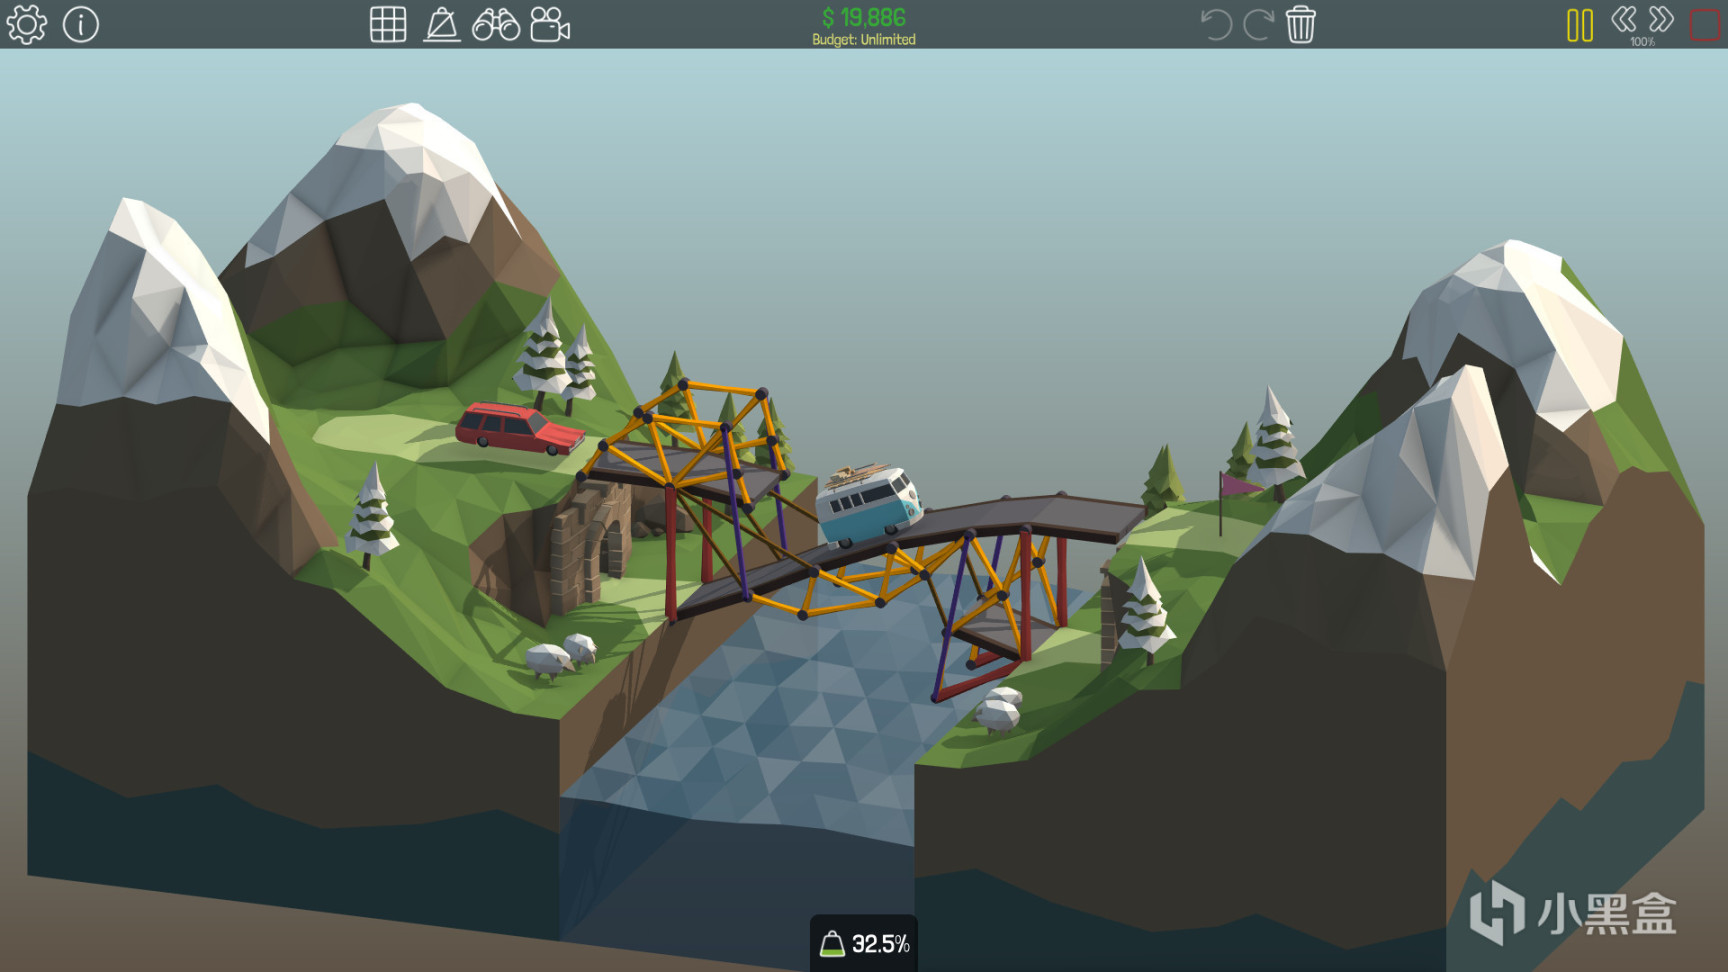 【PC游戏】沙盒模拟游戏《多边形造桥》《多边形造桥2》低价区价格暴涨-第2张